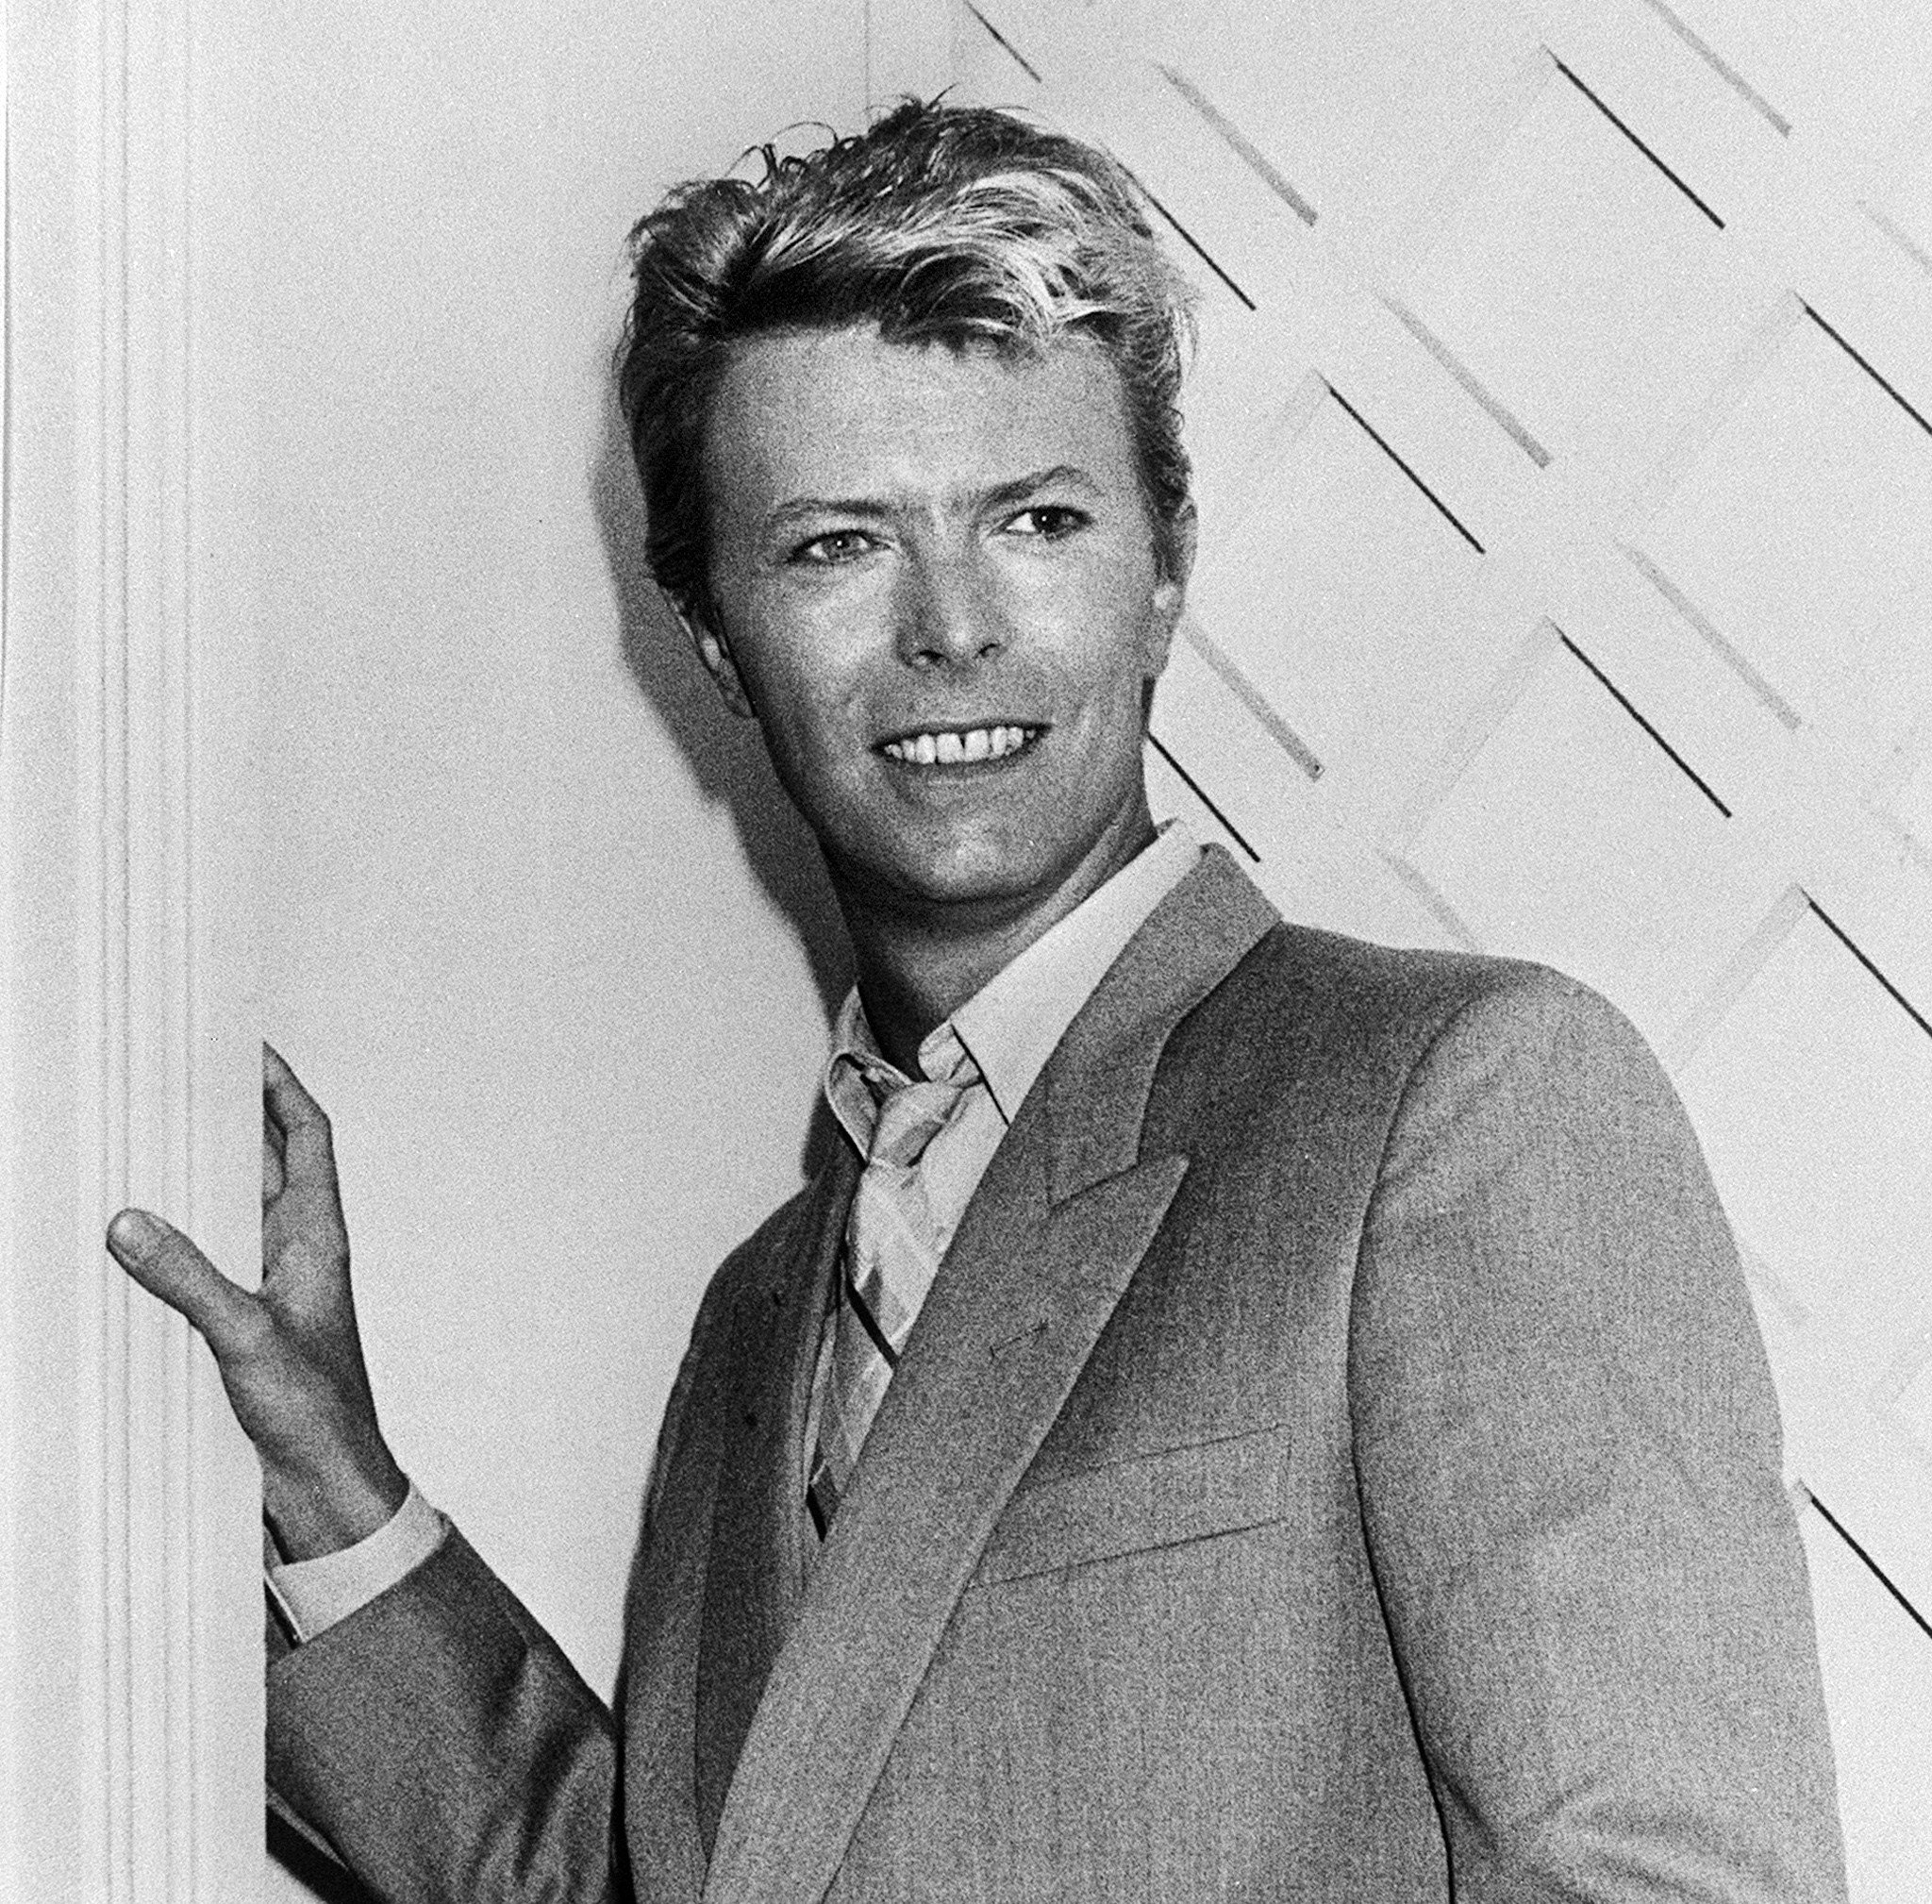 "Let's Dance" singer David Bowie in a suit